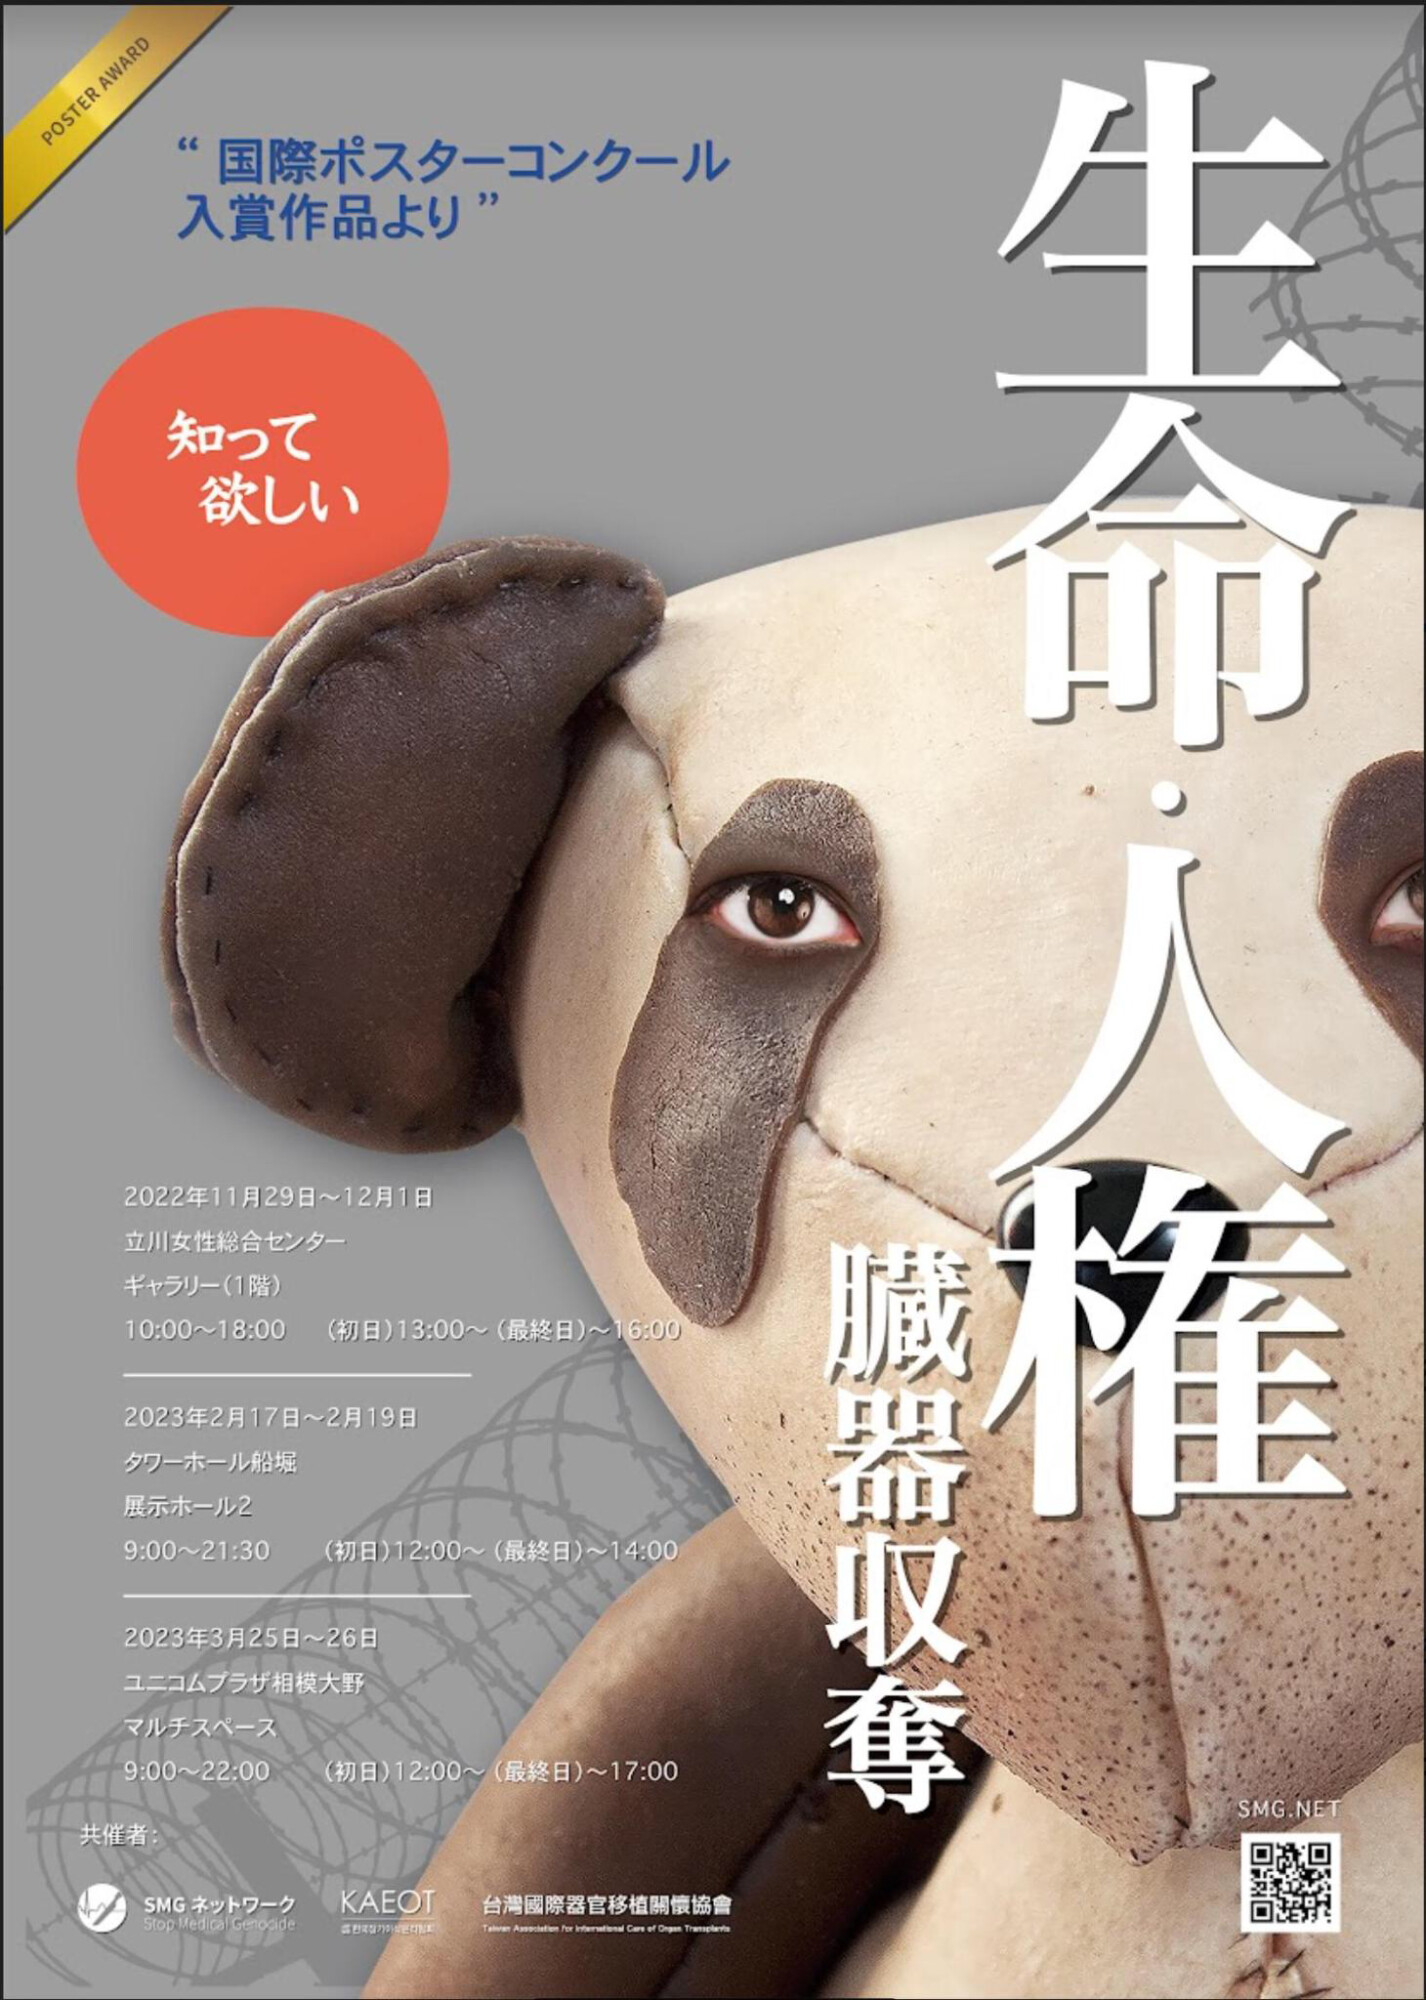 「日本人も無関係ではない」　生体臓器収奪の実態訴えるポスター展　東京・江戸川区で2月17日から開催